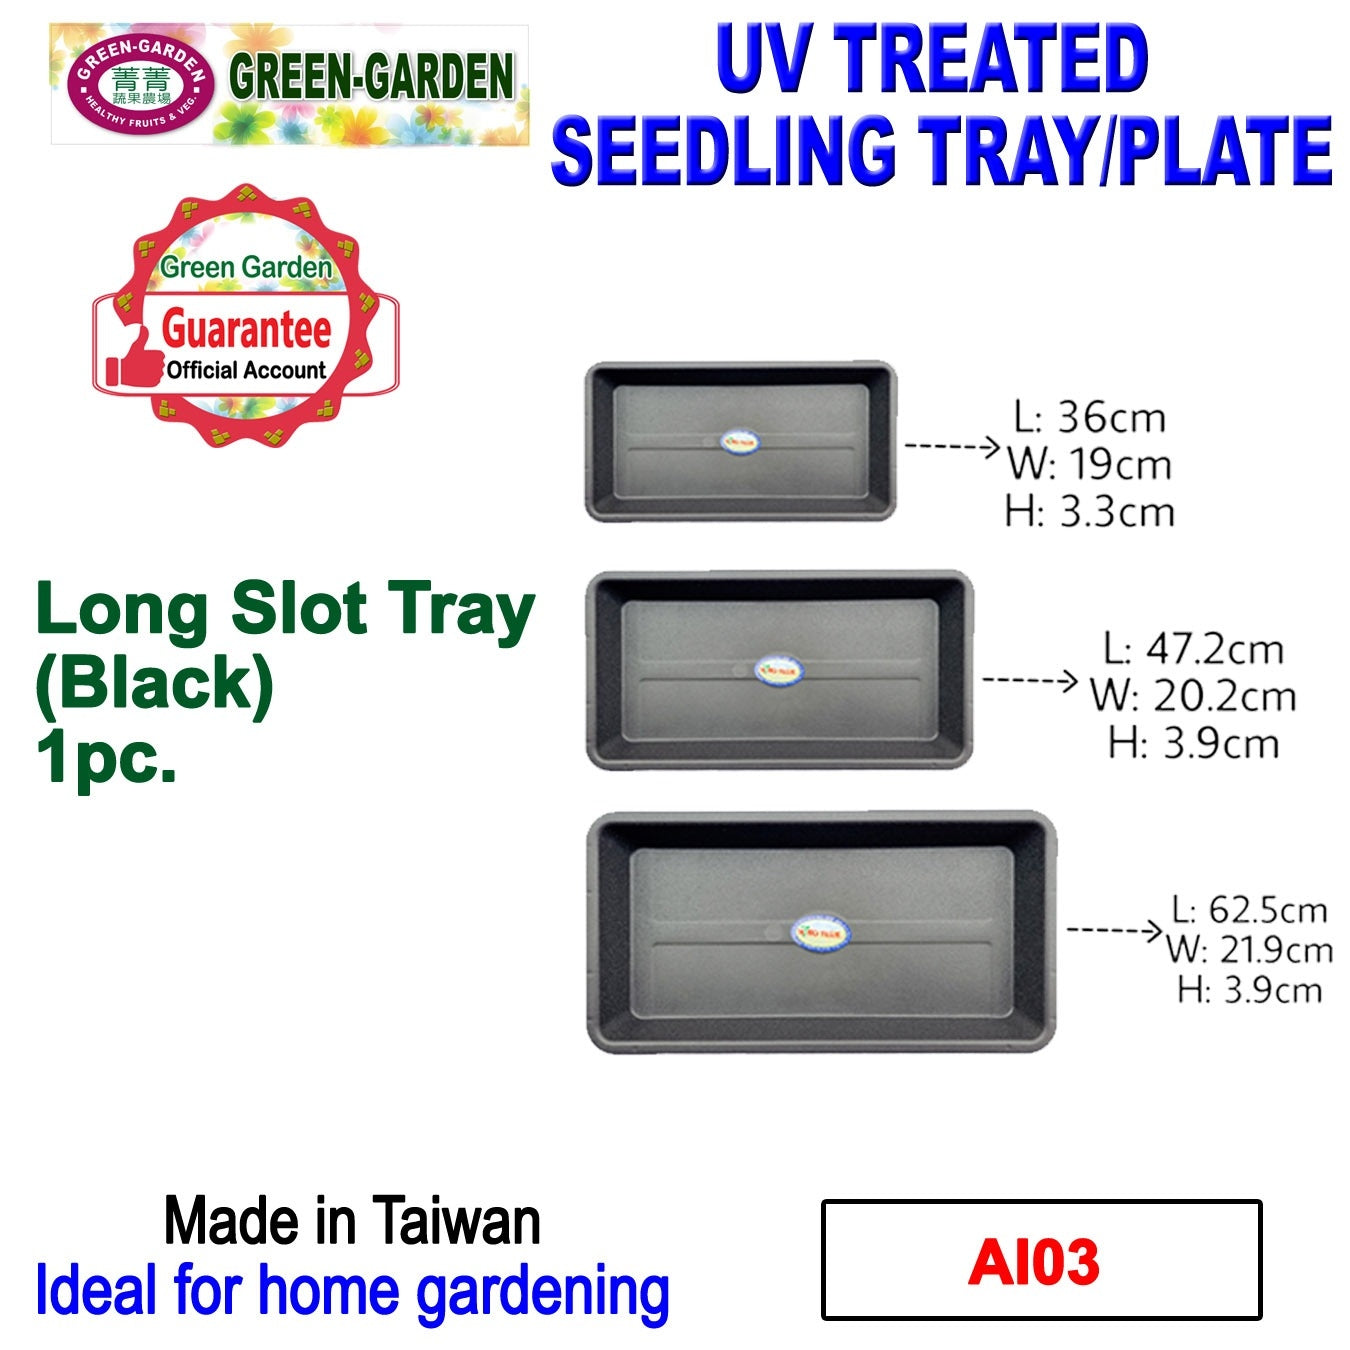 UV TREATED Long Slot Tray Size: 62.5x21.9x3.9cm